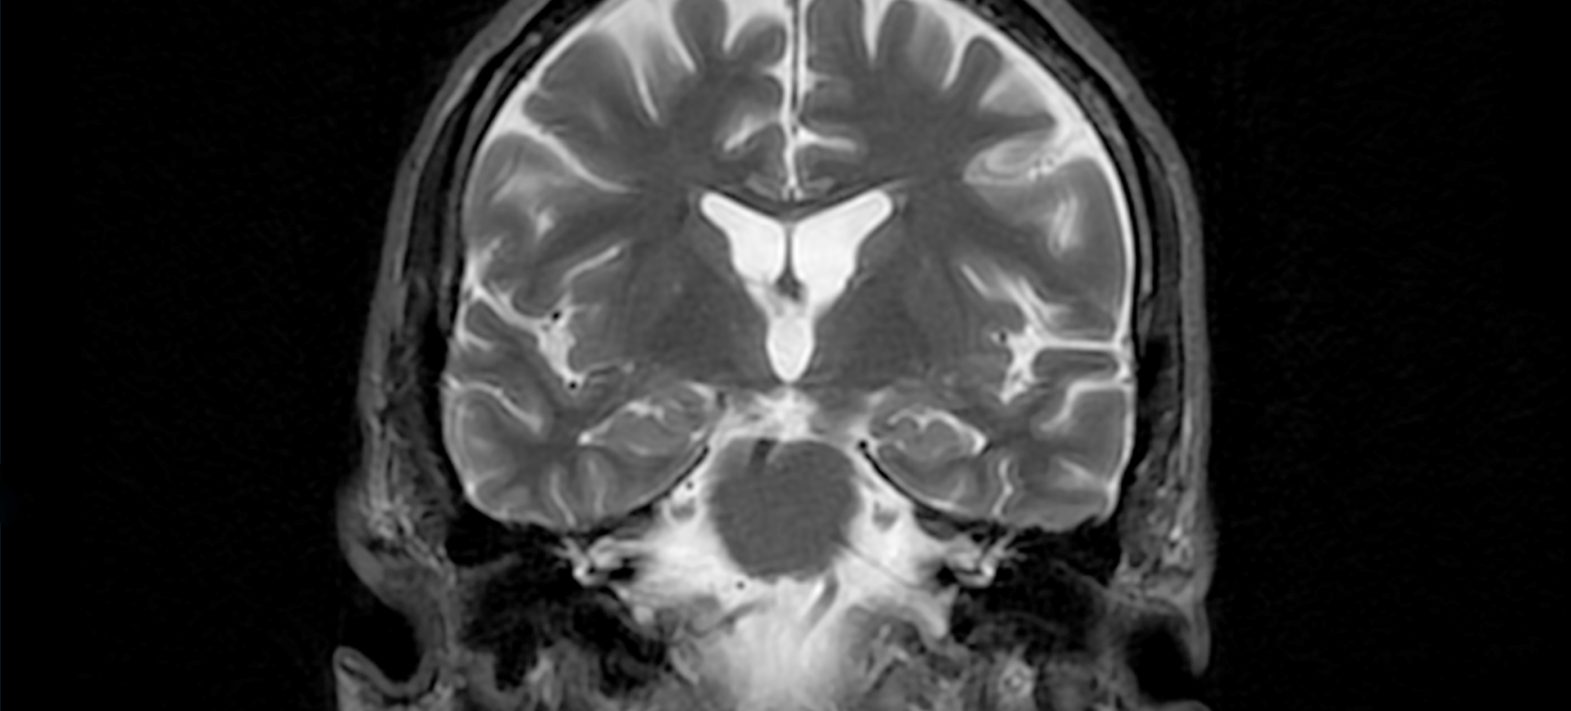 Maladie d’Alzheimer : la cosmochimie au service du cerveau